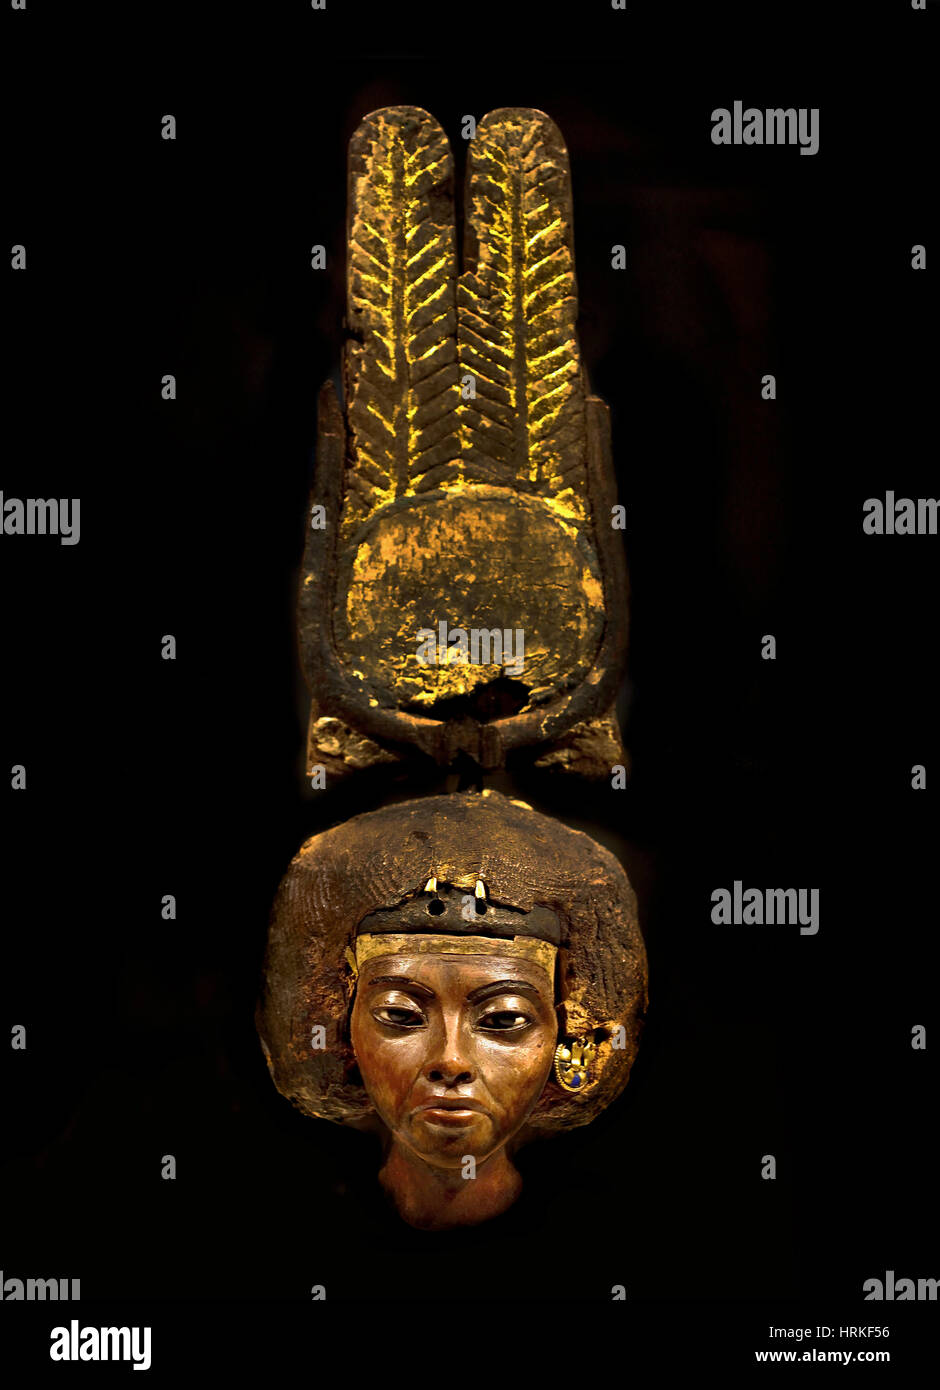 Testa di una statuetta della regina Teje Amenophis (Amenhotep) III. Medinet el-Ghurob (Egitto / Fayum) legno di tasso, oro, argento, lapislazzuli, tessile, faience, stucco, 32.7 x 7.8 x 8.2 cm Foto Stock